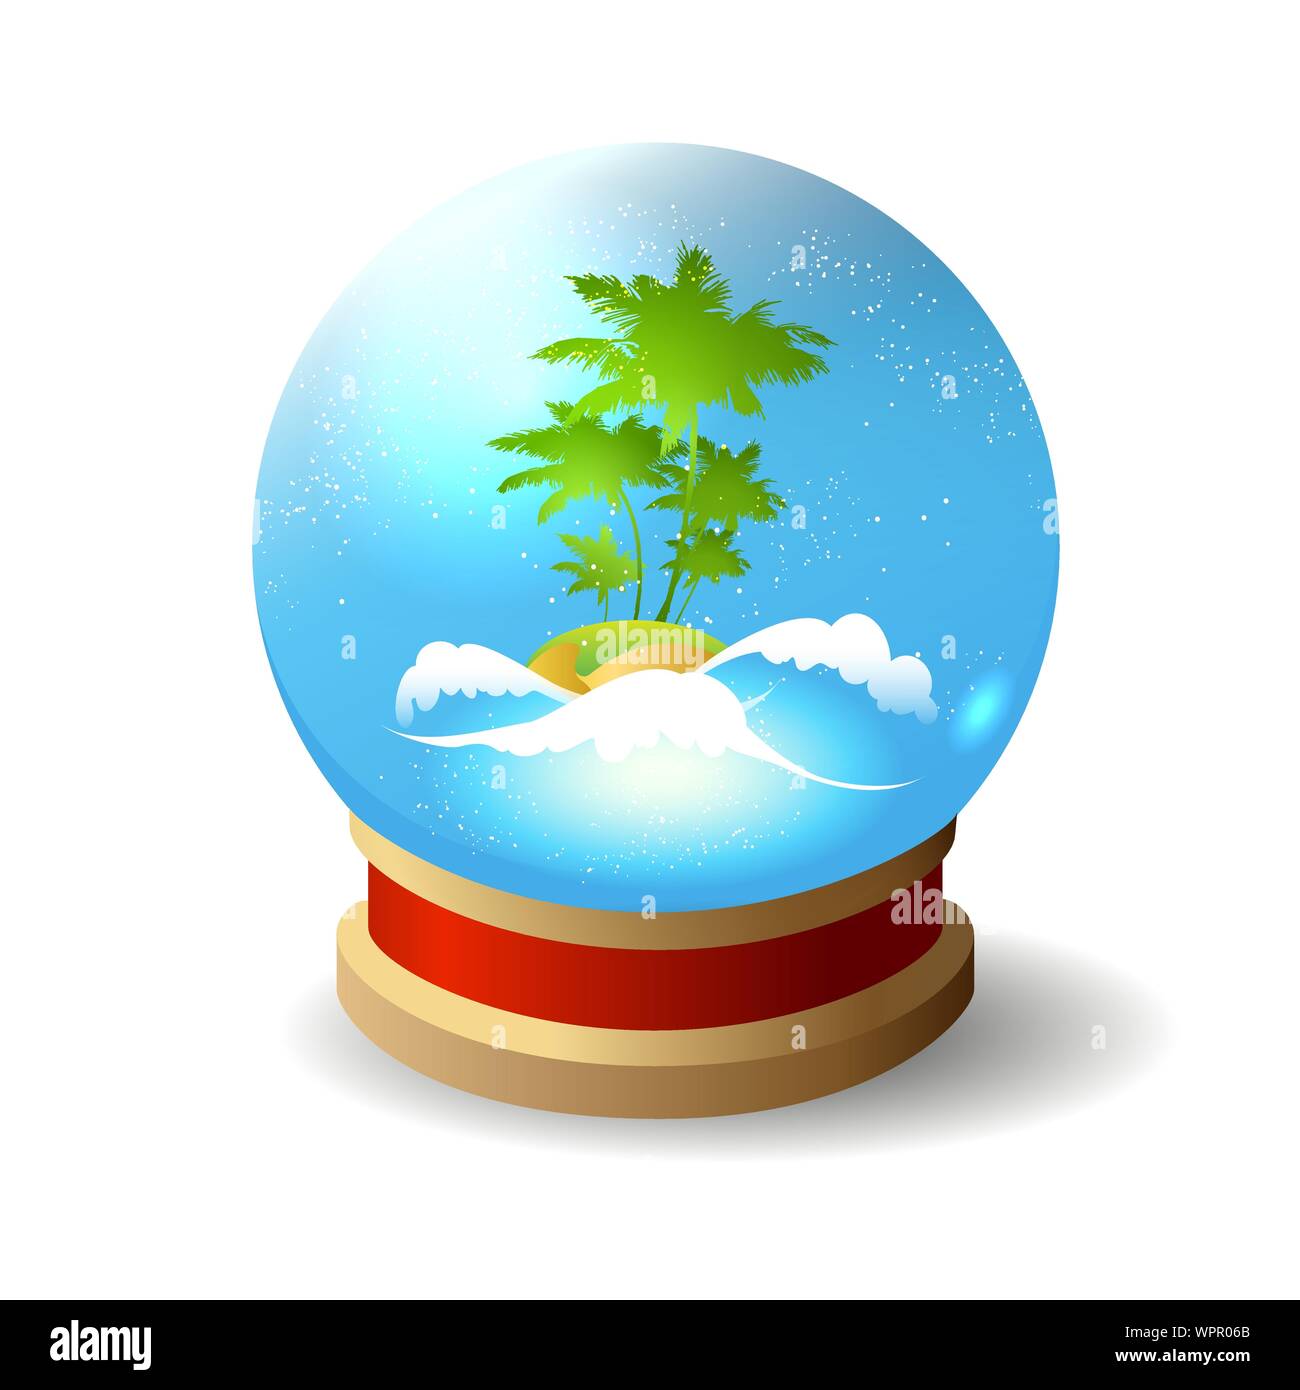 Île tropicale dans l'océan avec des palmiers à l'intérieur d'une boule de cristal. Vector illustration. Illustration de Vecteur